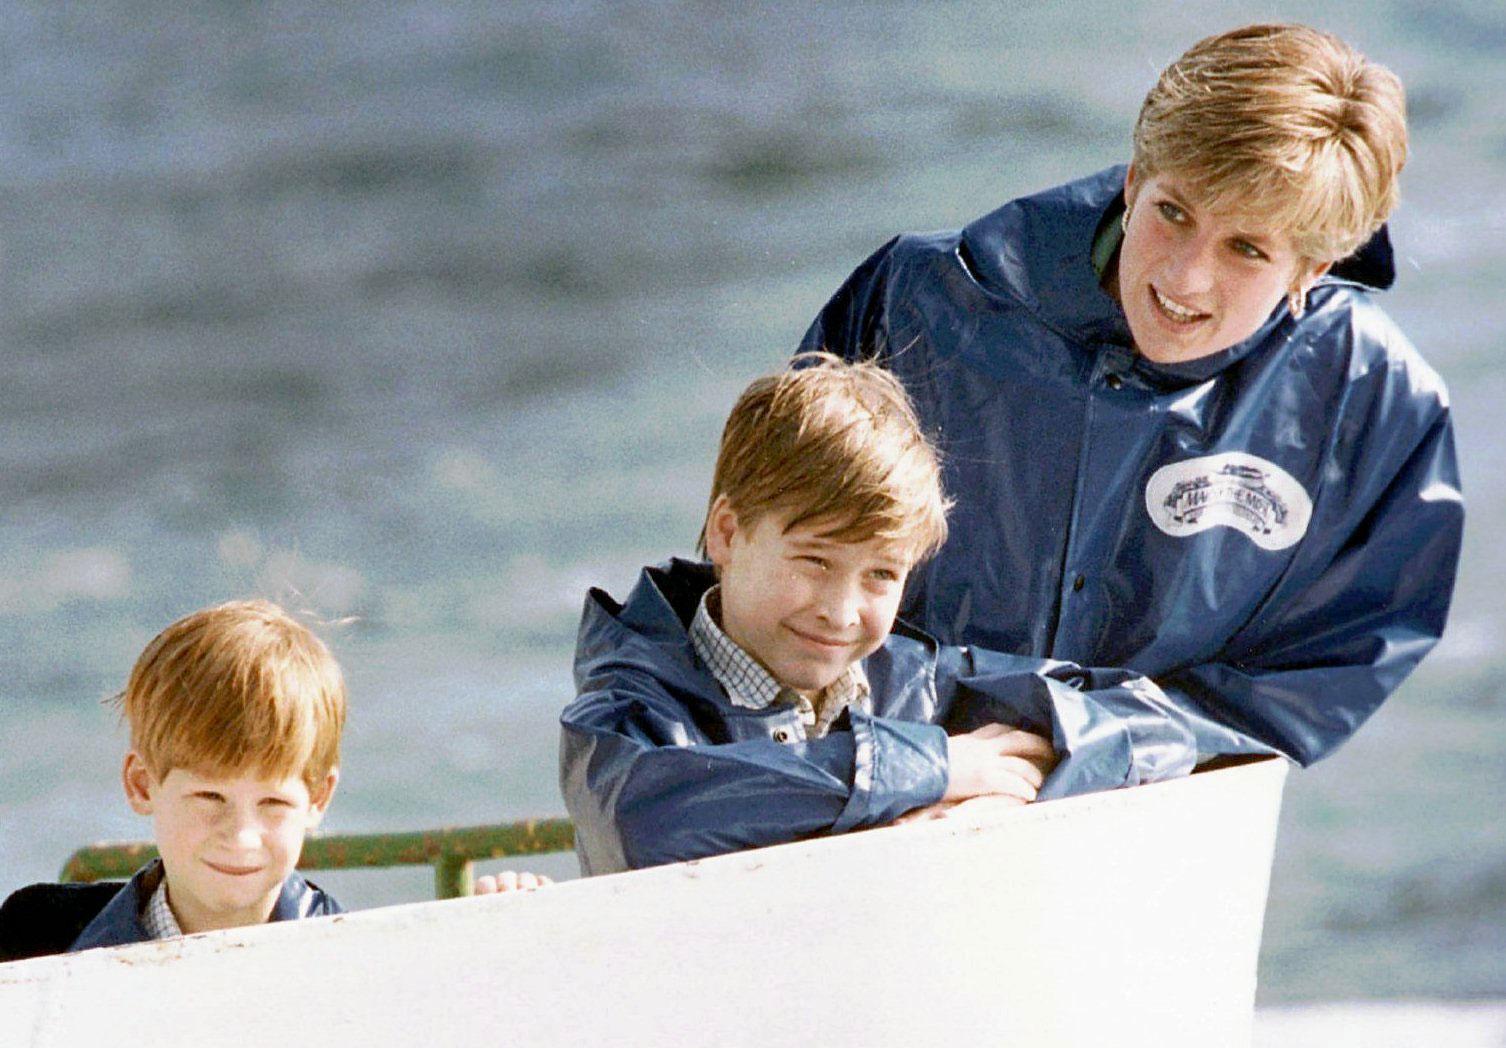 Prins William vill att hans barn ska växa upp utanför palatsväggarna, precis som hans egen mamma försökte göra med honom och hans lillebror.